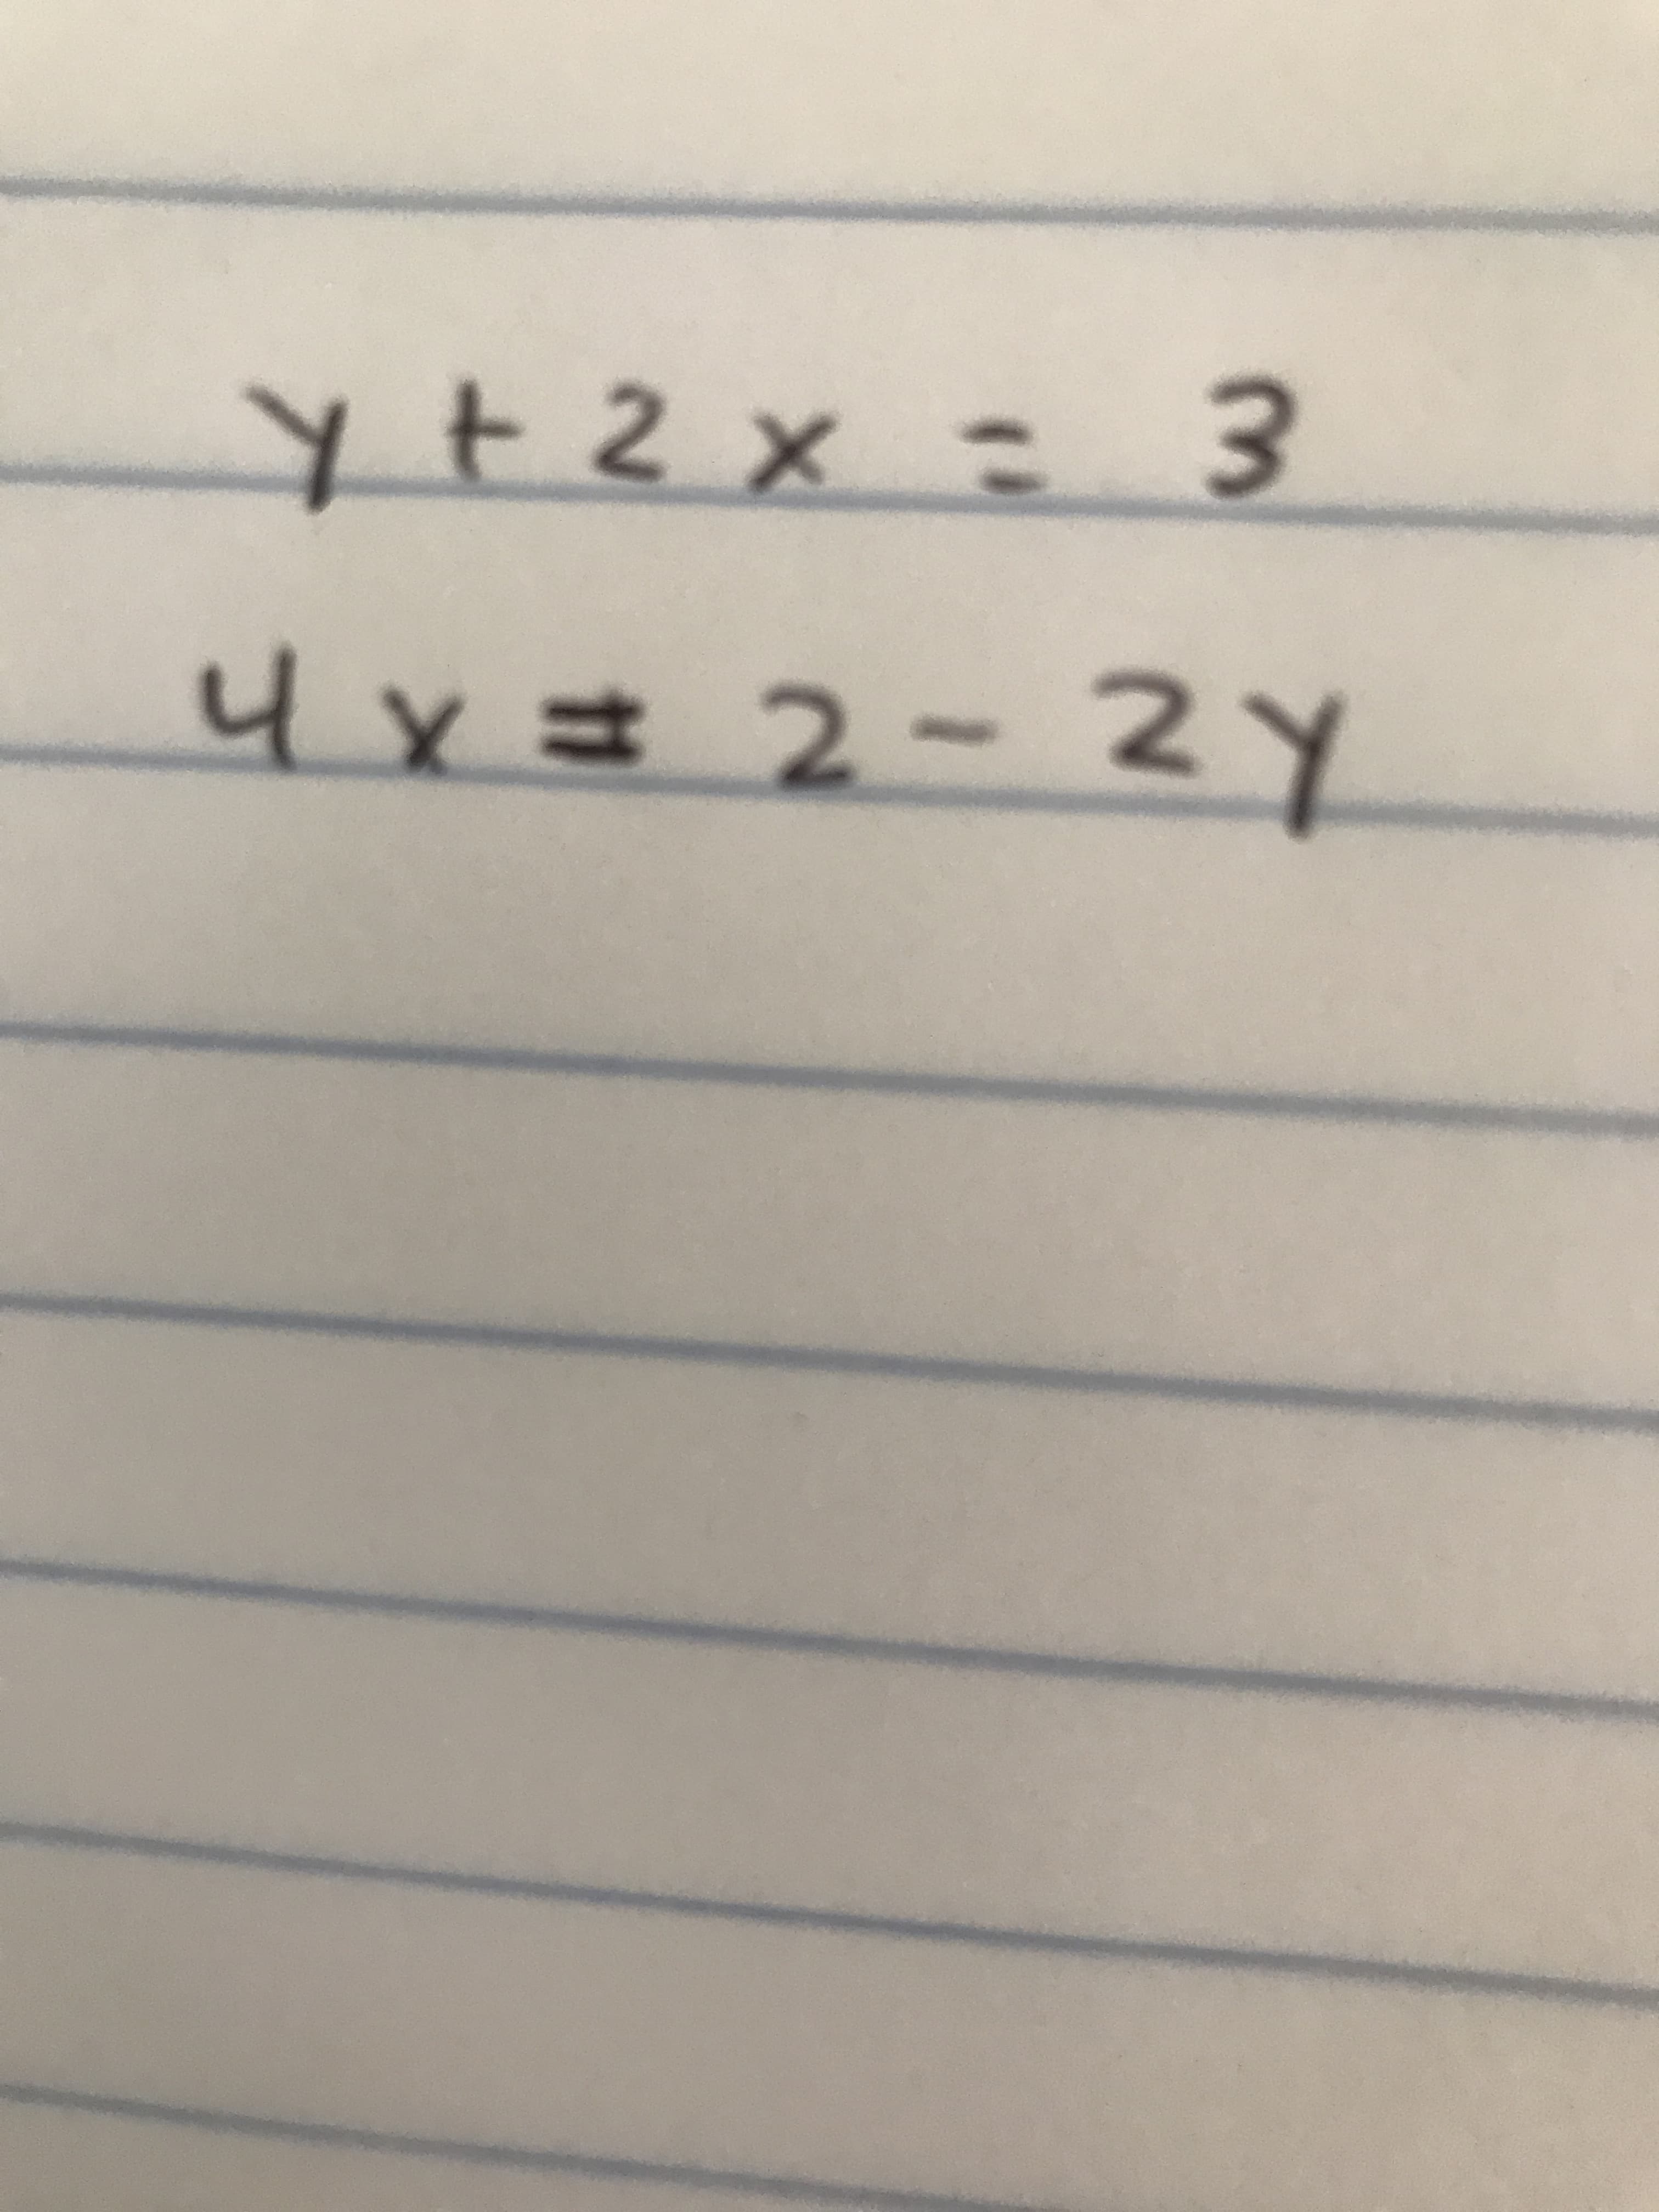 y+2x= 3
4x=2-2Y
